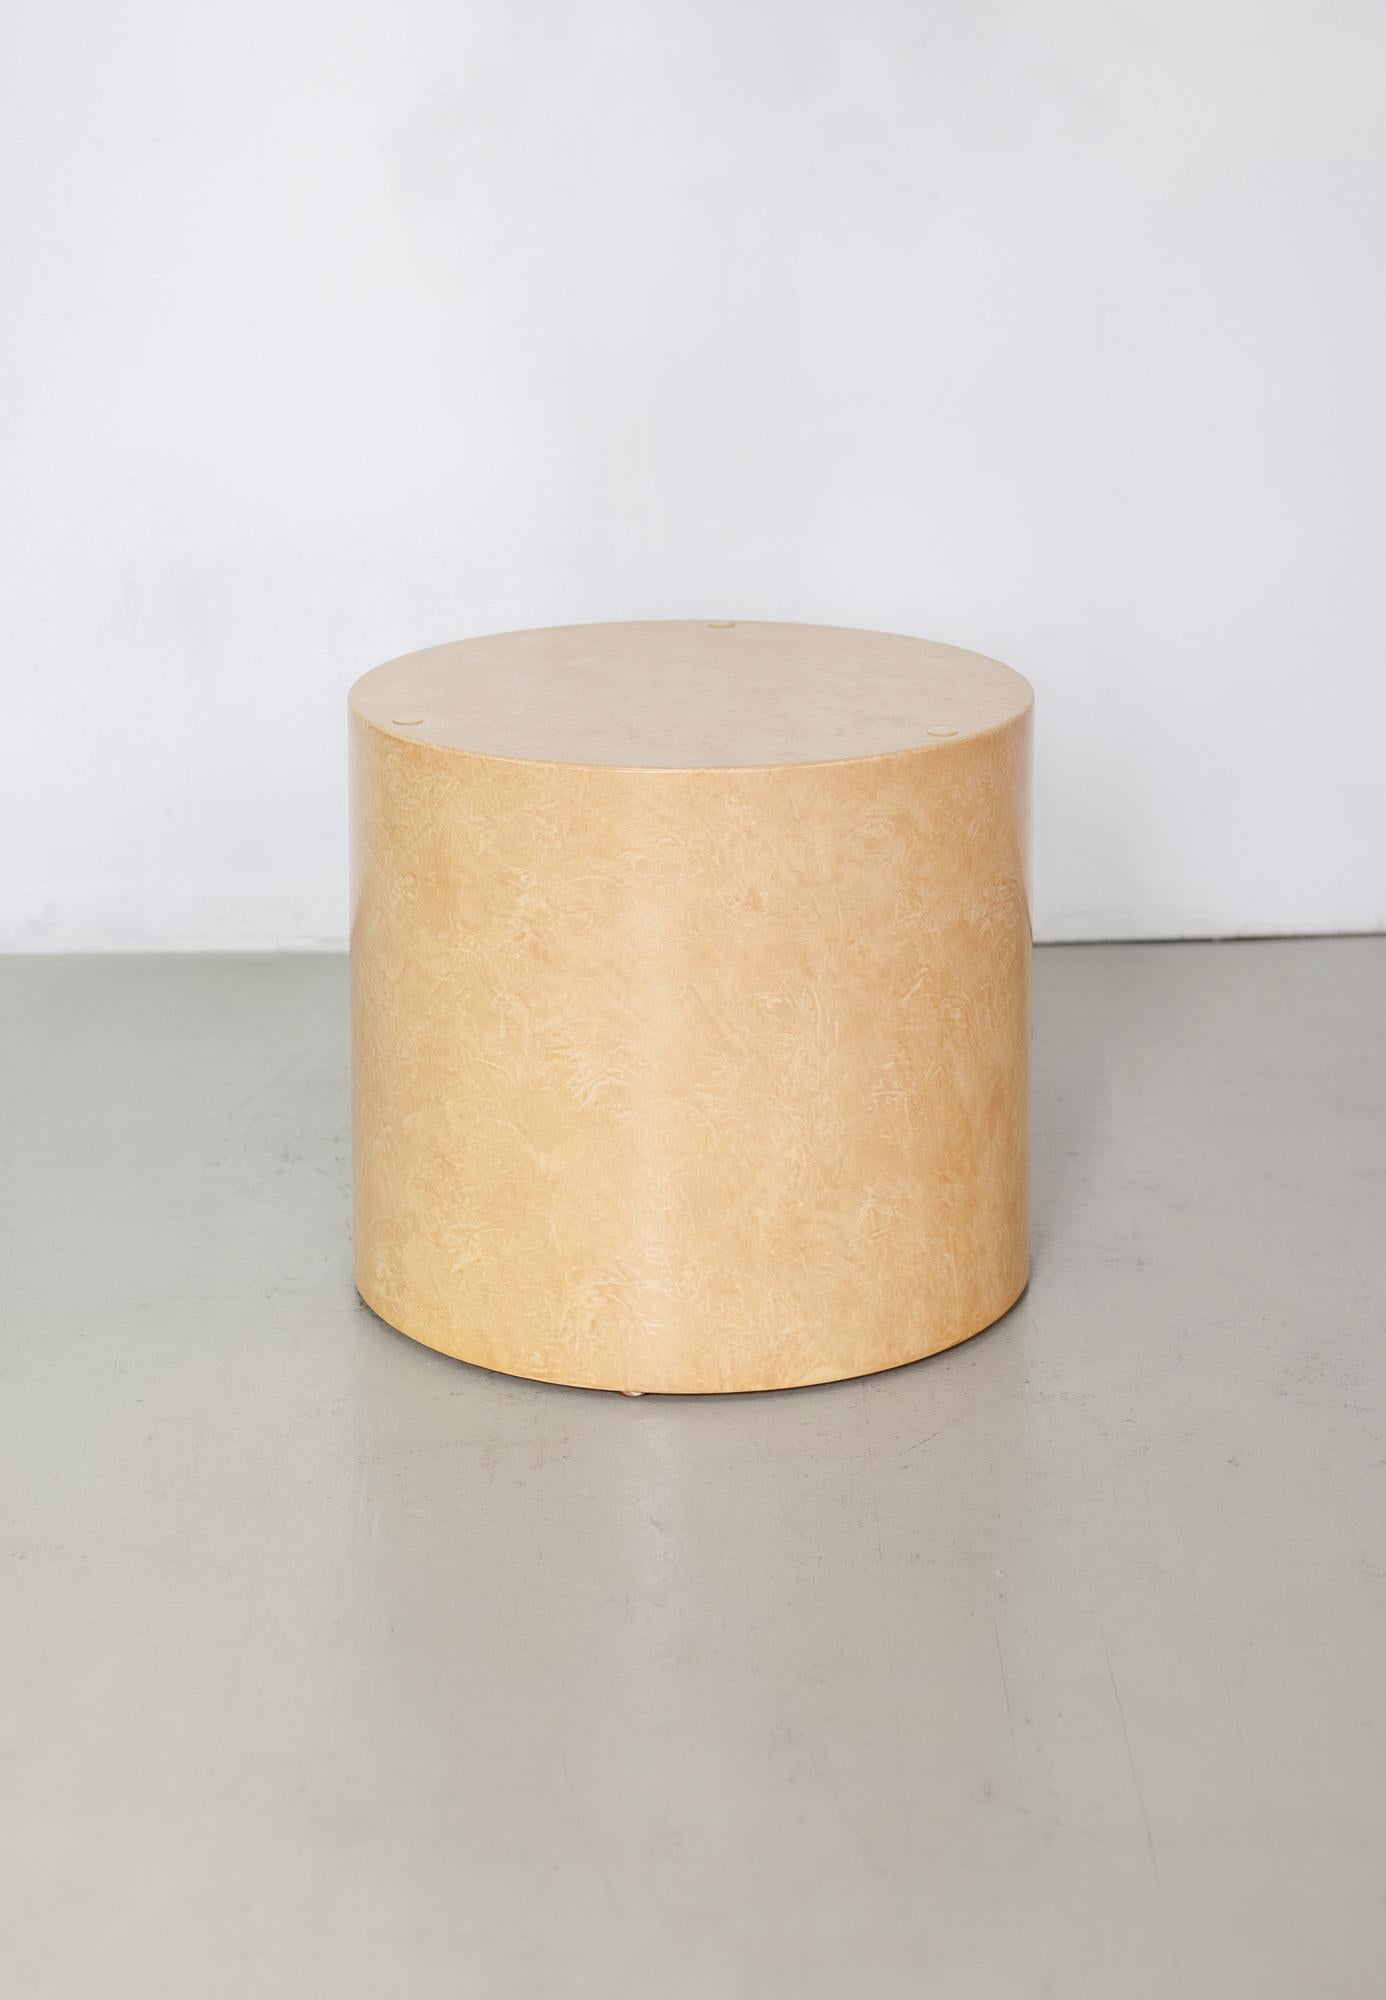 Magnifique base de table basse cylindrique vintage des années 1970 de Paul Mayen pour Intrex. Placage en bois de ronce. Il n'est pas livré avec son plateau en verre d'origine, mais il est facile d'en acheter ou d'en fabriquer un.